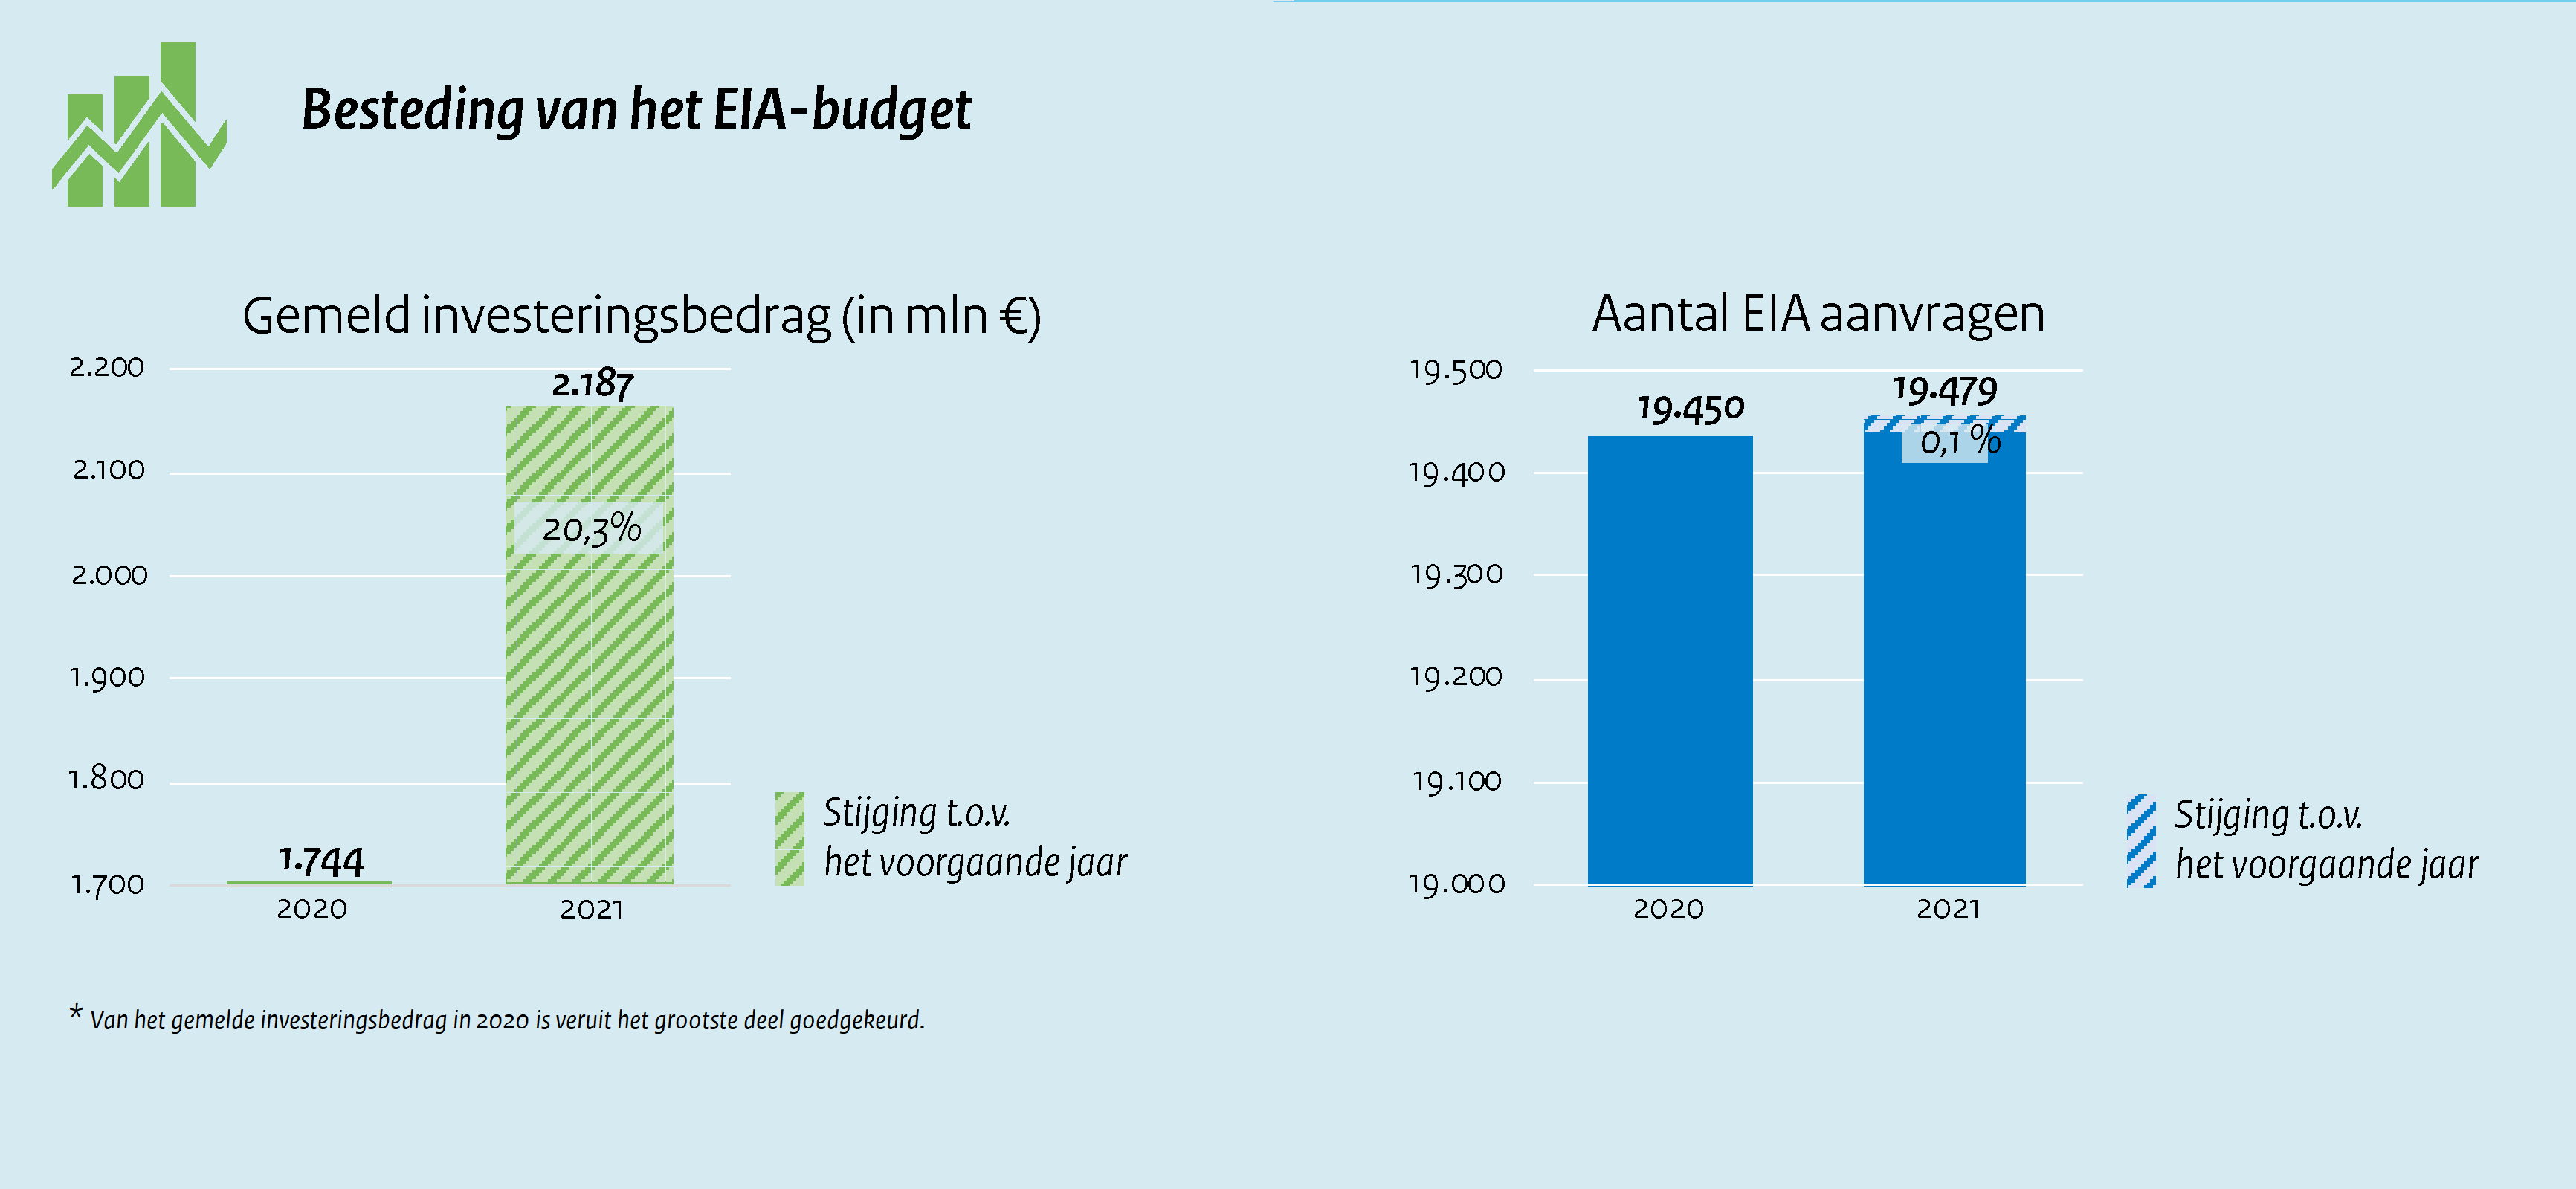 Besteding van het budget EIA 2021